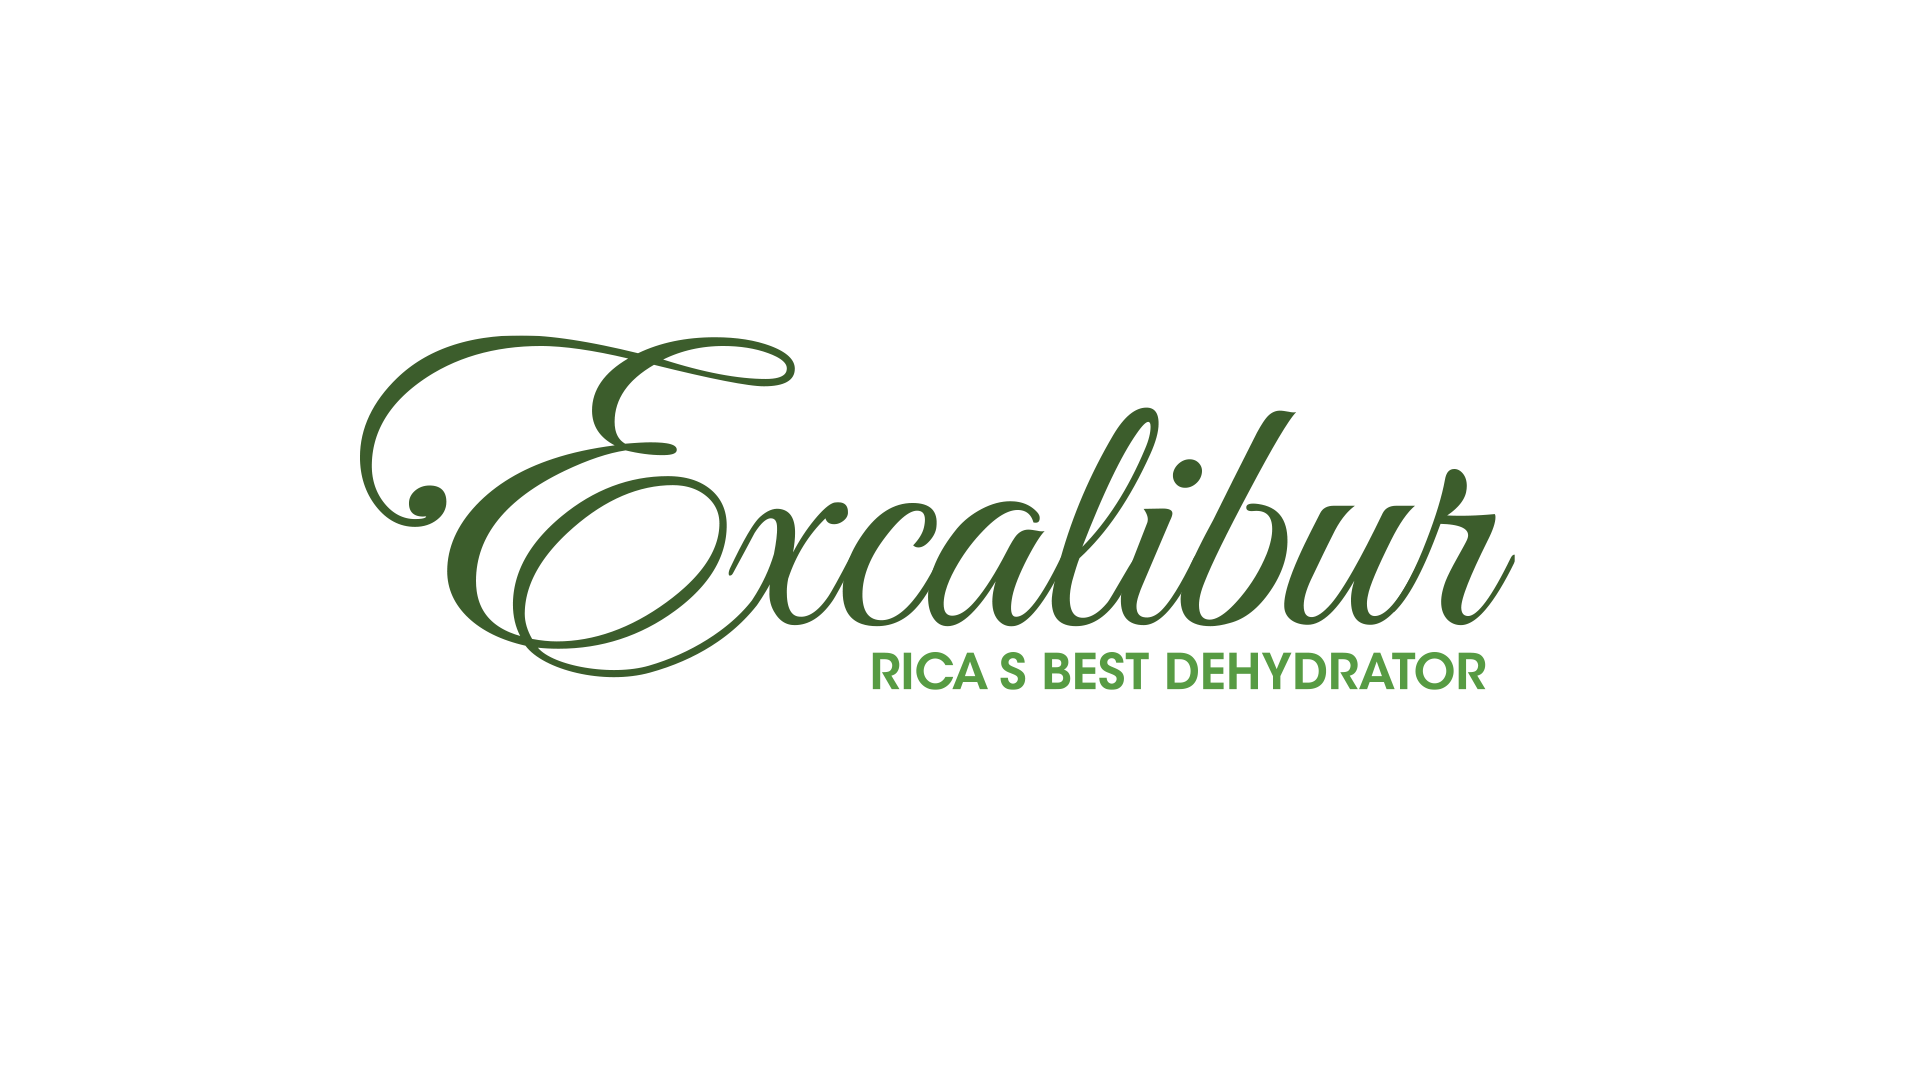 Excalibur Food Dehydrators